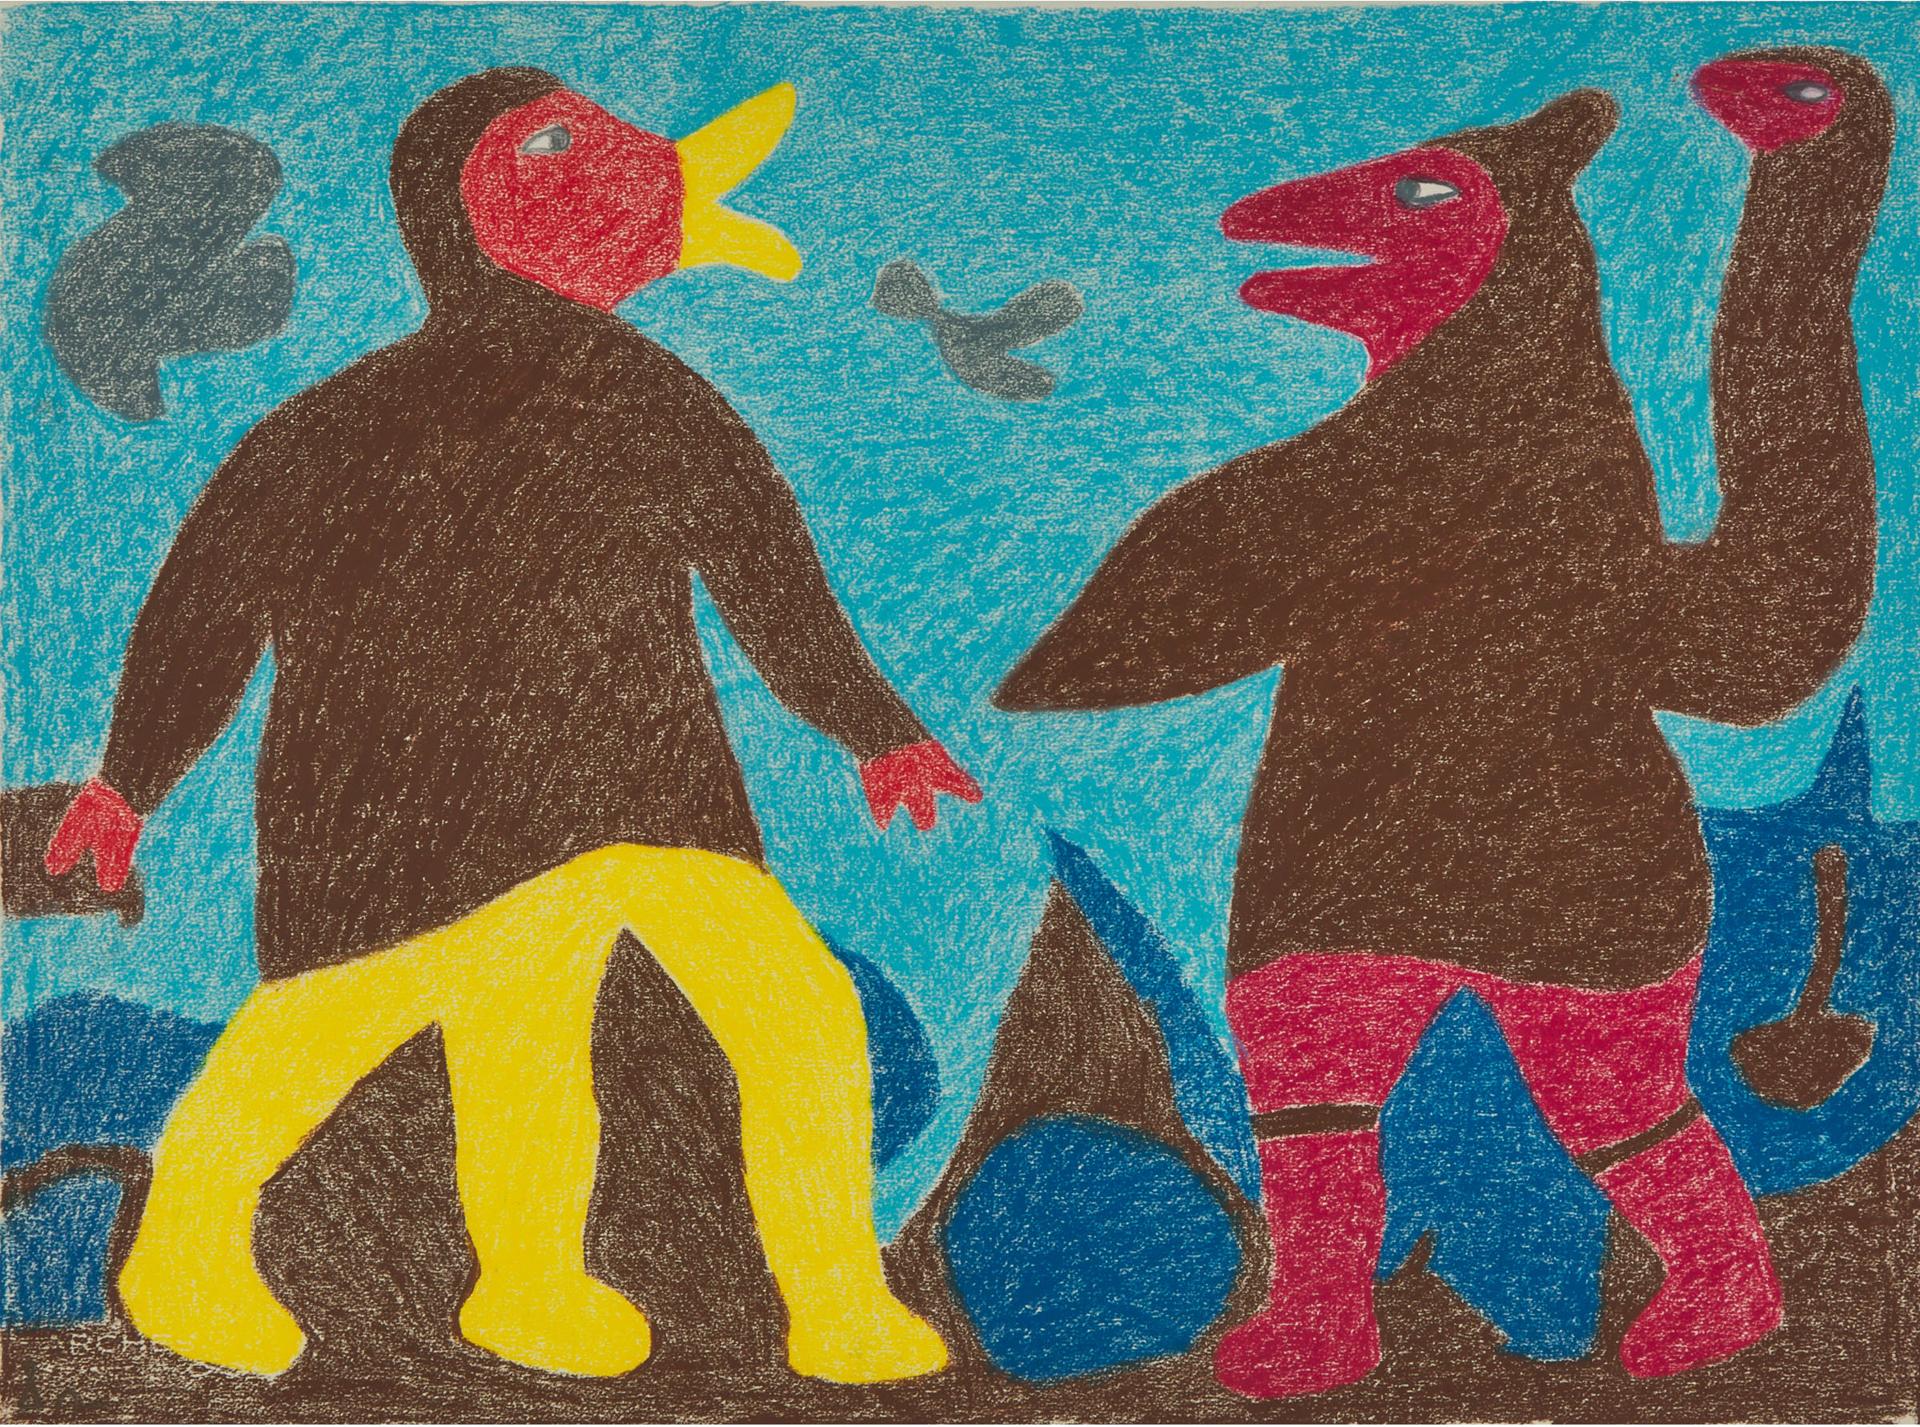 Irene Avaalaaquiaq Tiktaalaaq (1941) - Untitled (Bird Figures)